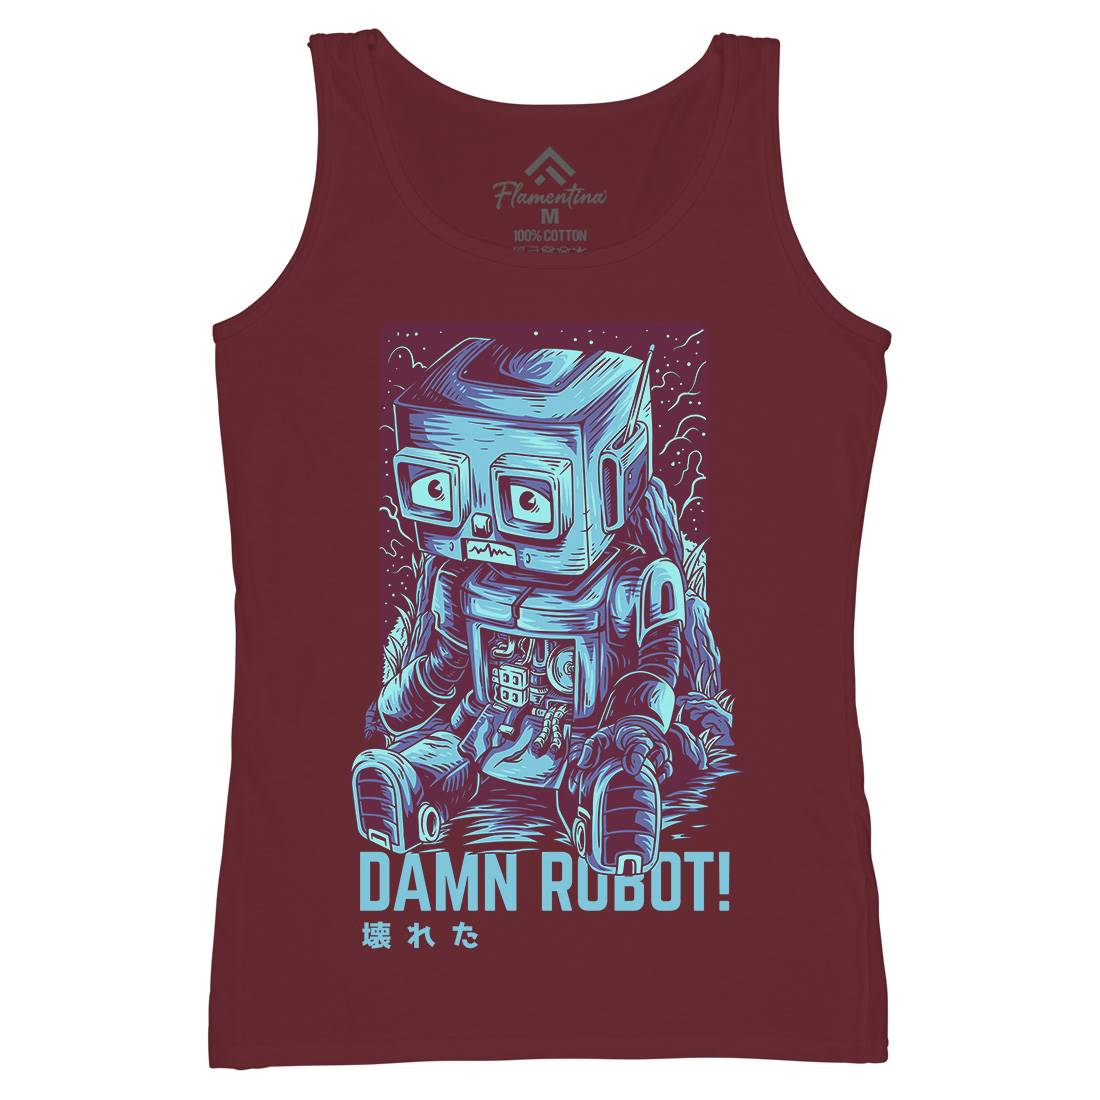 Damn Robot Womens Organic Tank Top Vest Space D742